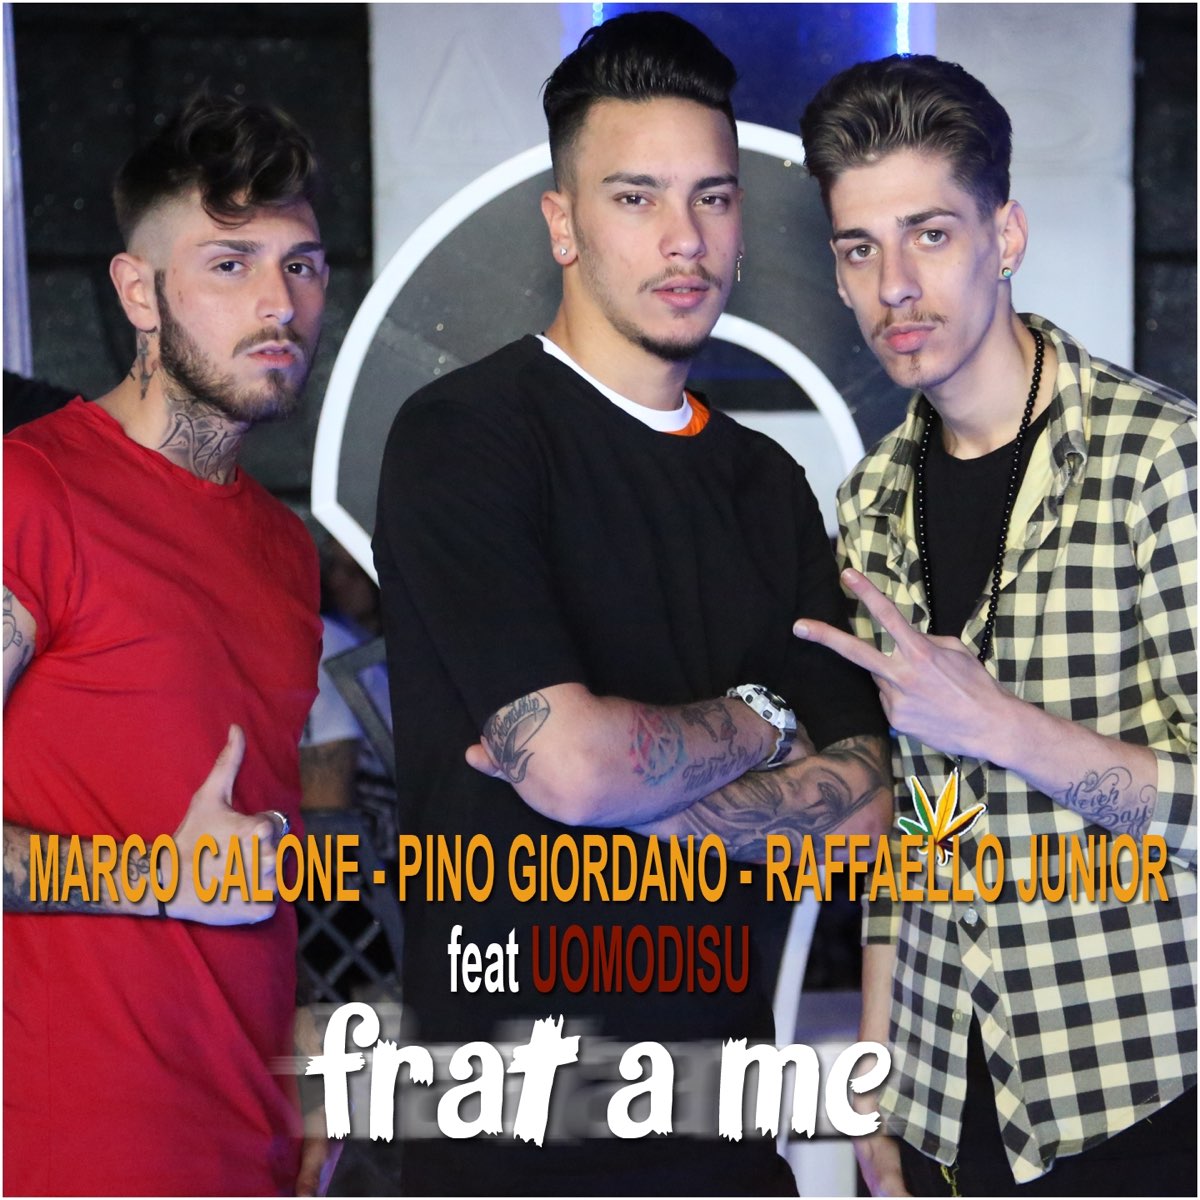 Frat a me (feat. Uomodisu) - Single by Raffello Junior, Marco Calone & Pino  Giordano on Apple Music